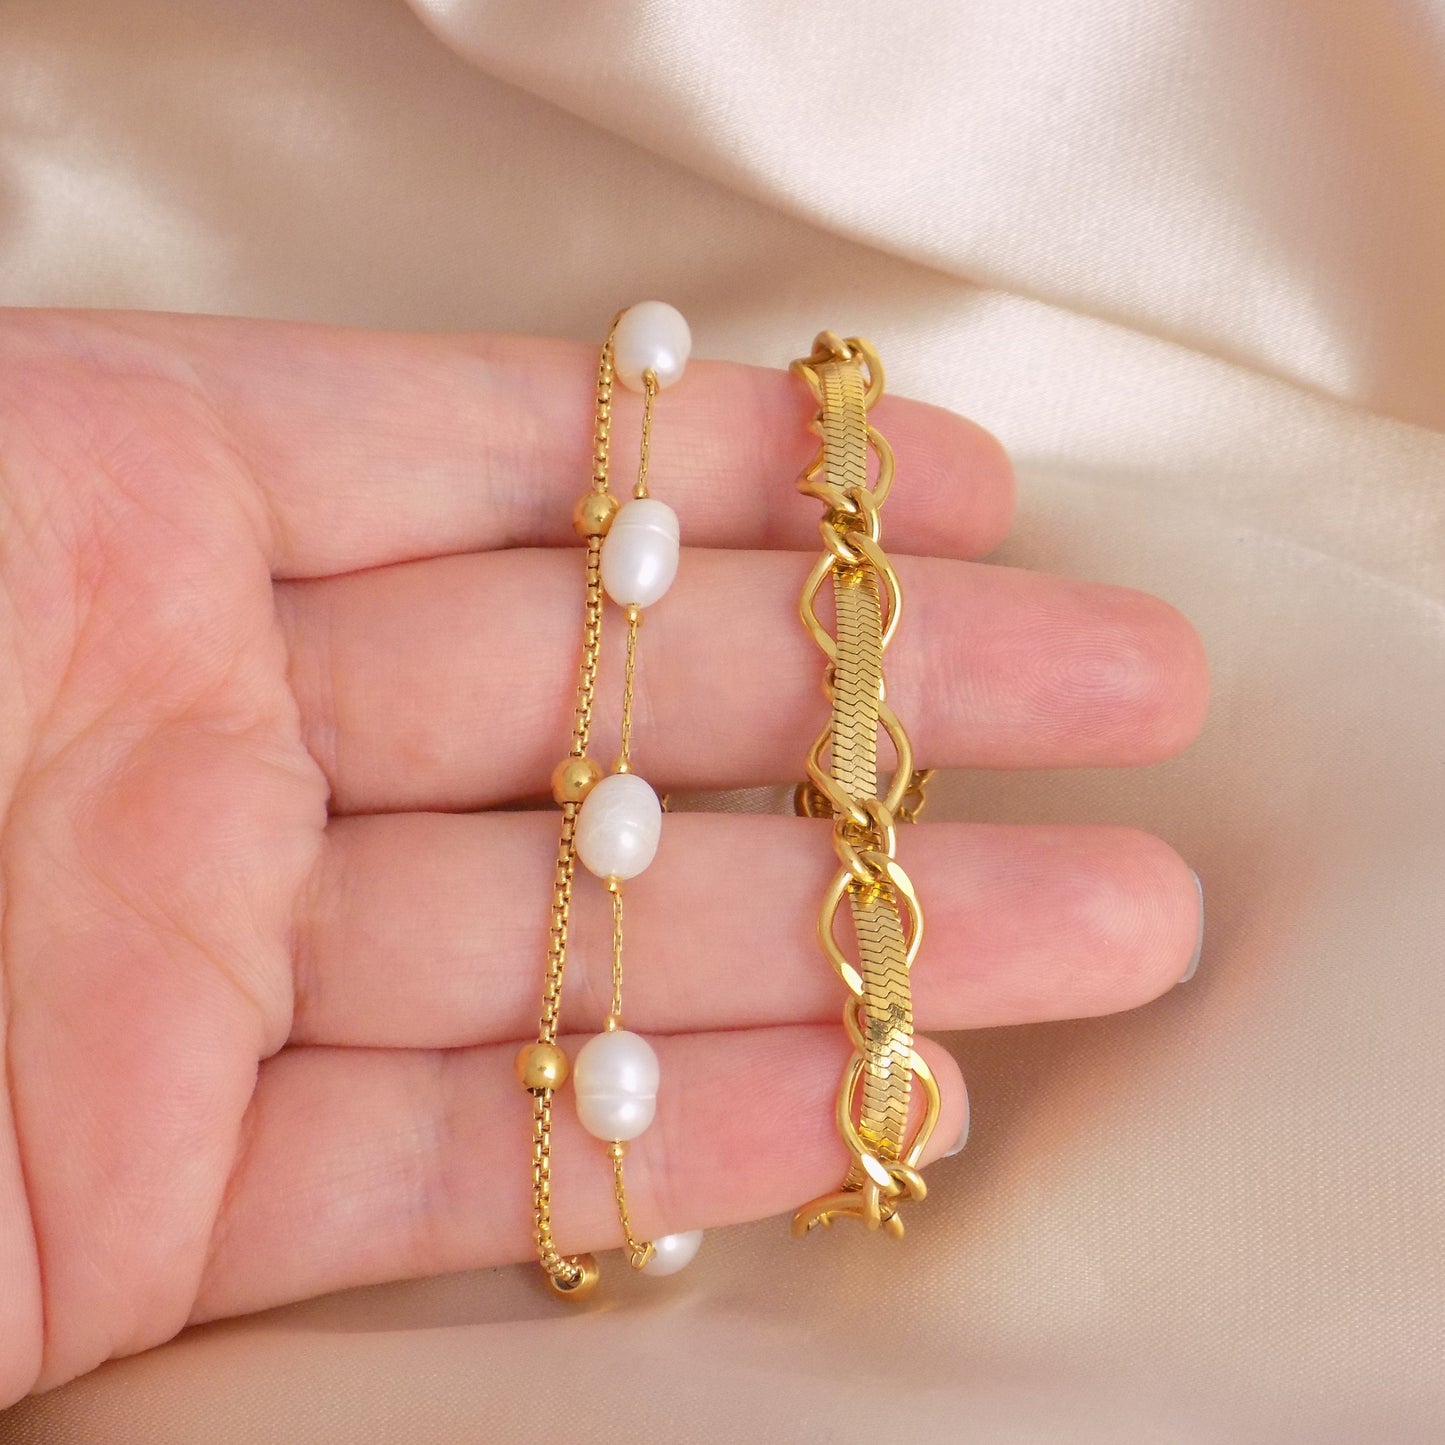 18K Gold Snake Chain Bracelet Adjustable Stainless Steel, Freshwater Pearl Bracelet, Christmas Gift For Her - M7-140